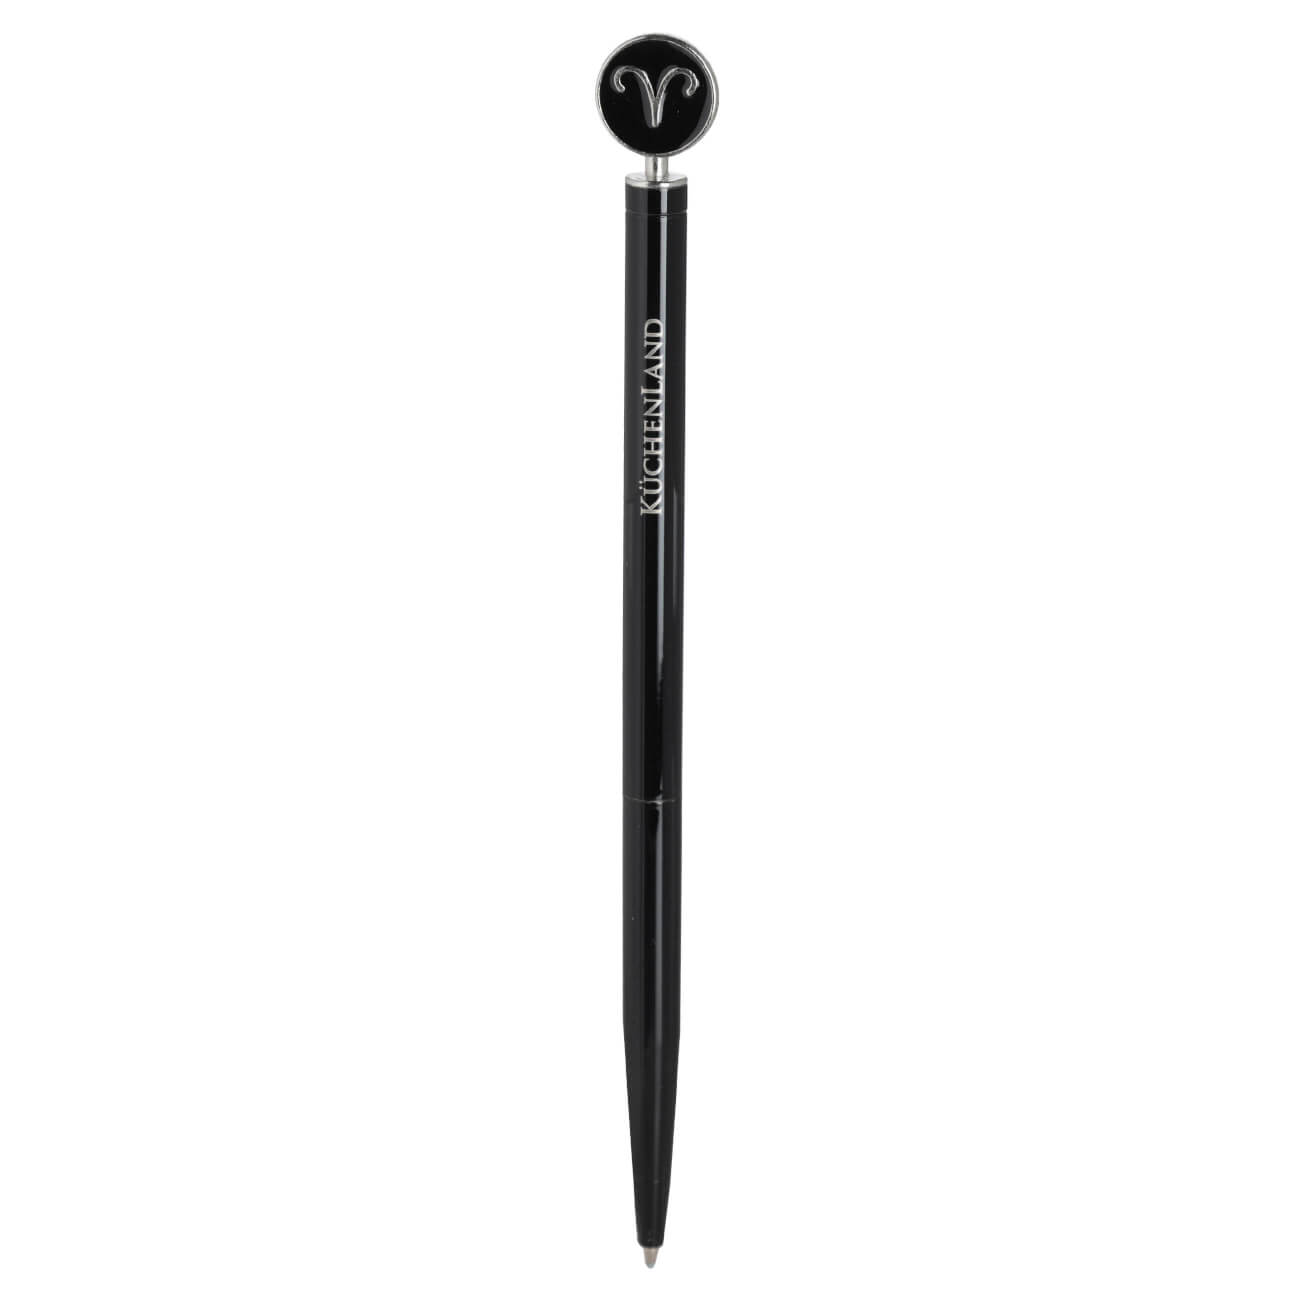 Ручка шариковая, 15 см, с фигуркой, сталь, черно-серебристая, Овен, Zodiac ручка шариковая подарочная поворотная в кожзам футляре